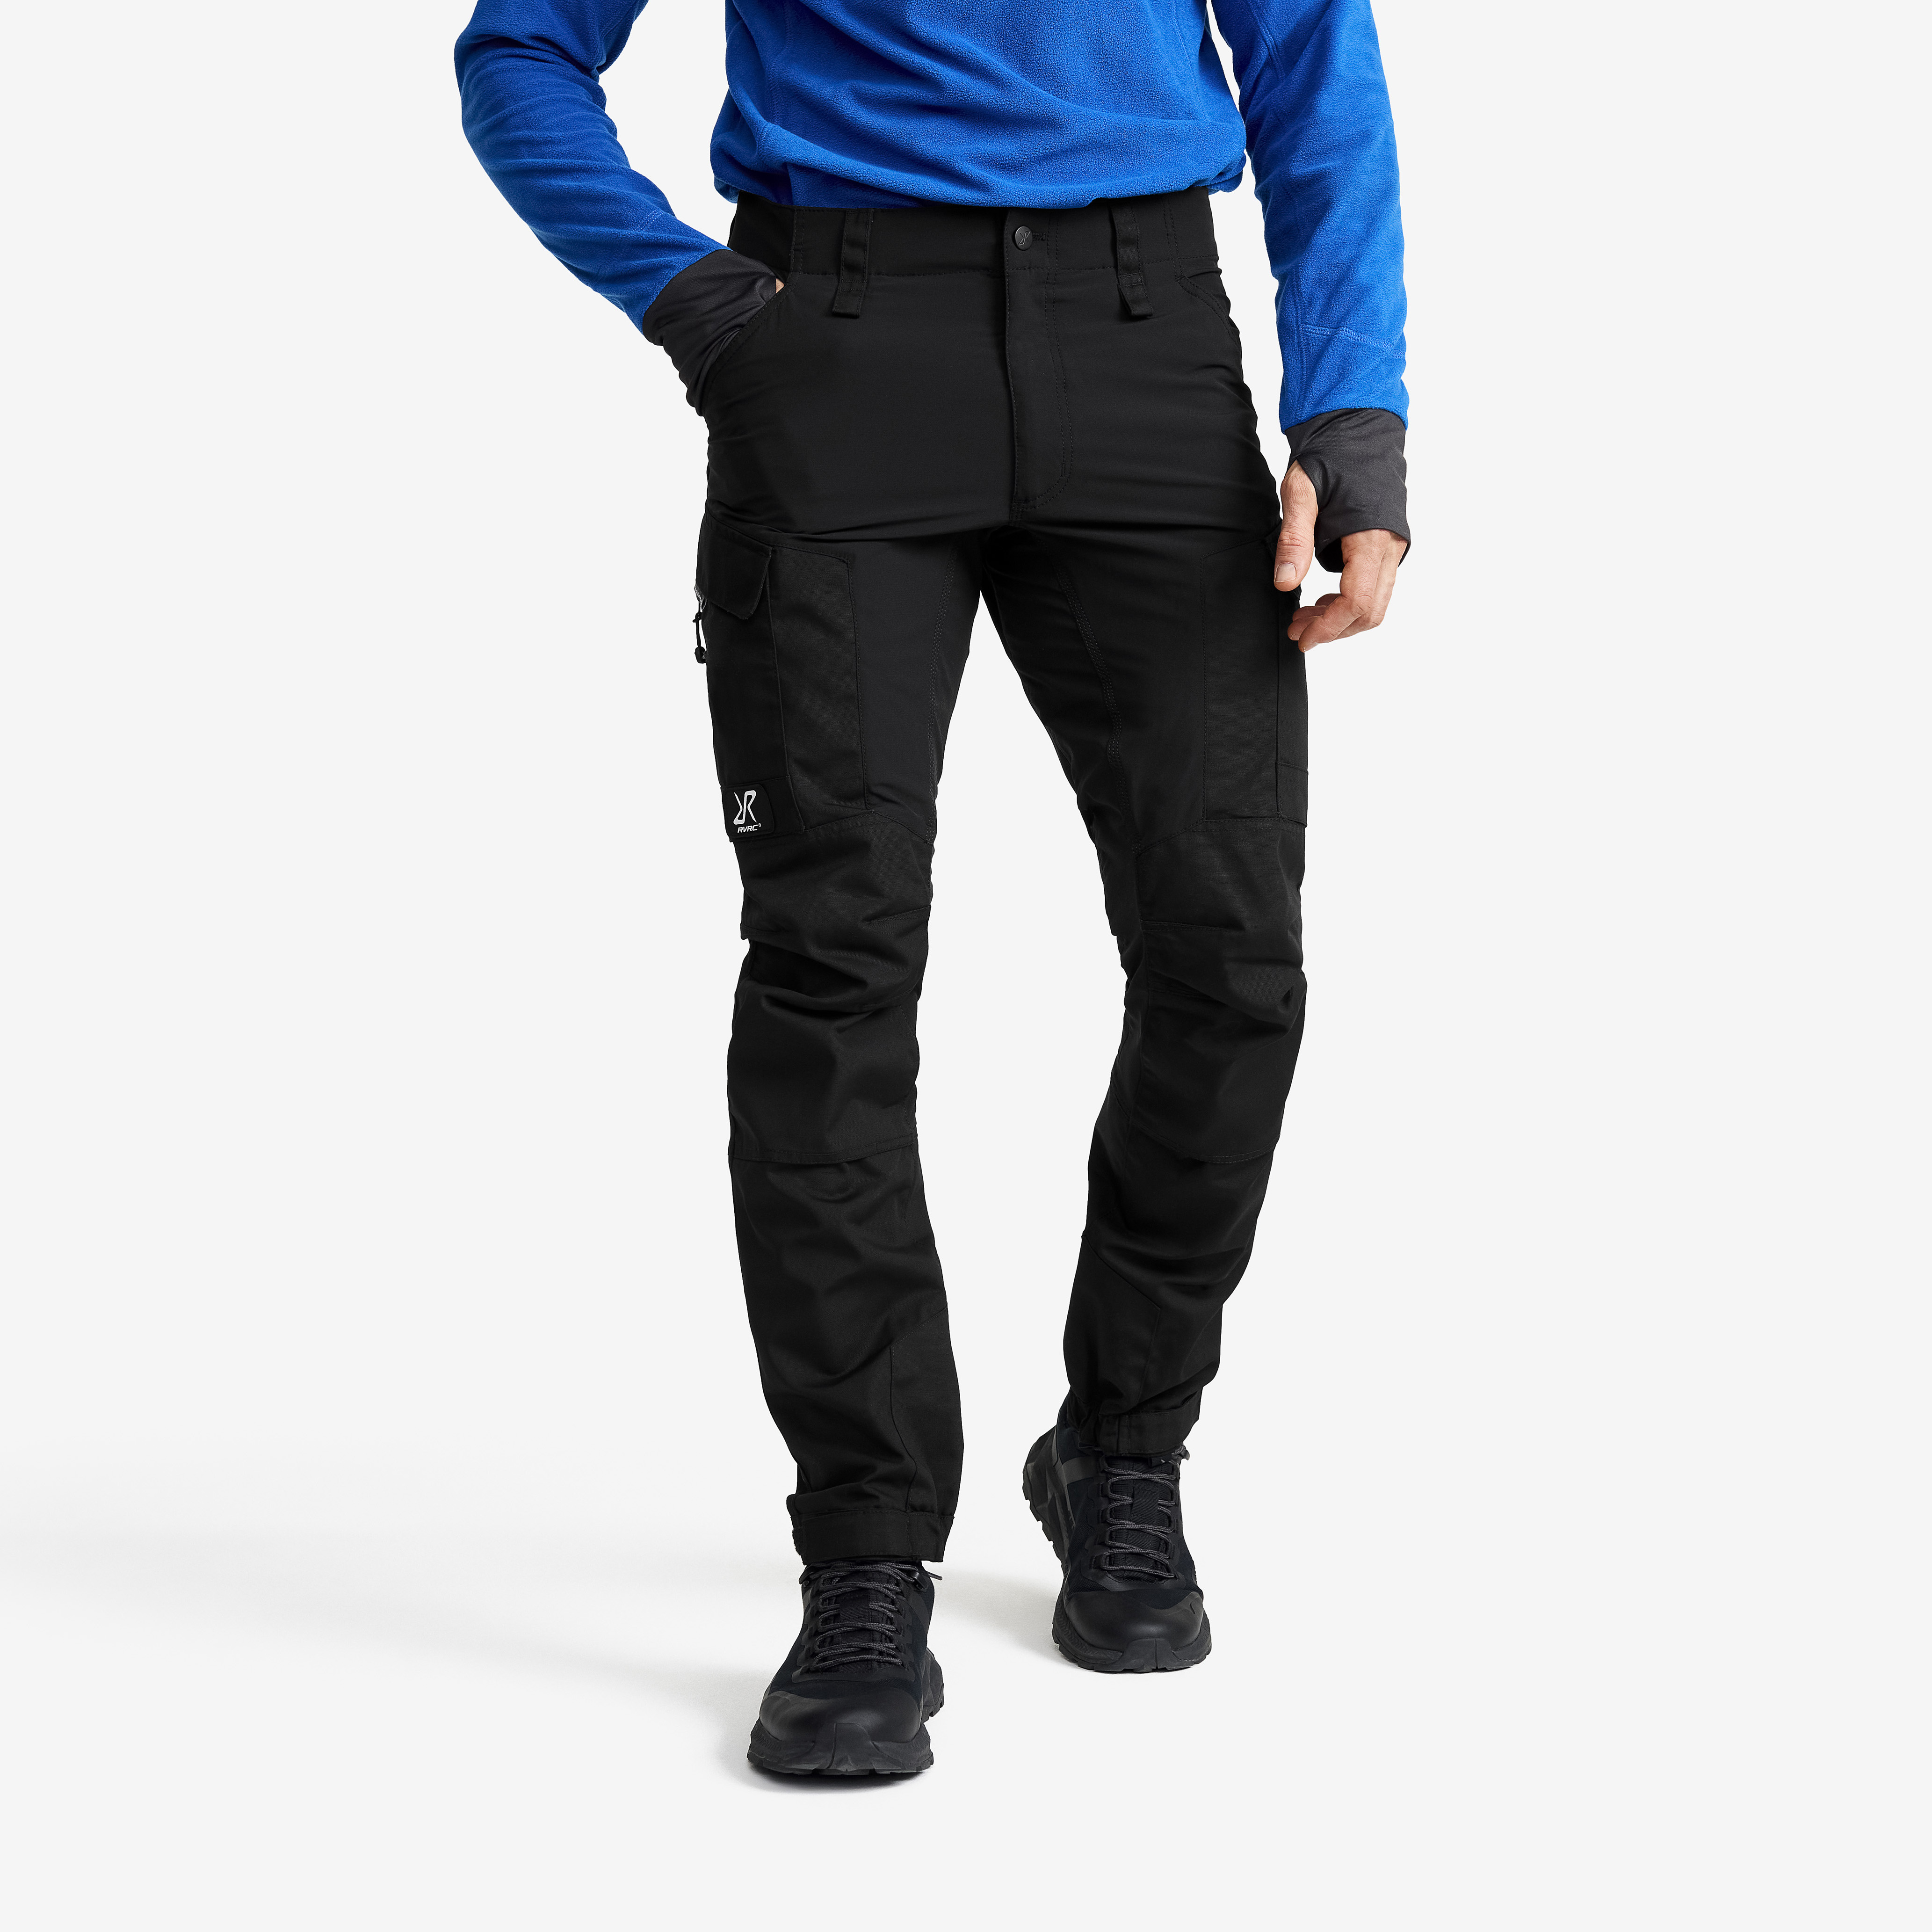 RVRC GP outdoorové kalhoty pro muže v černé barvě